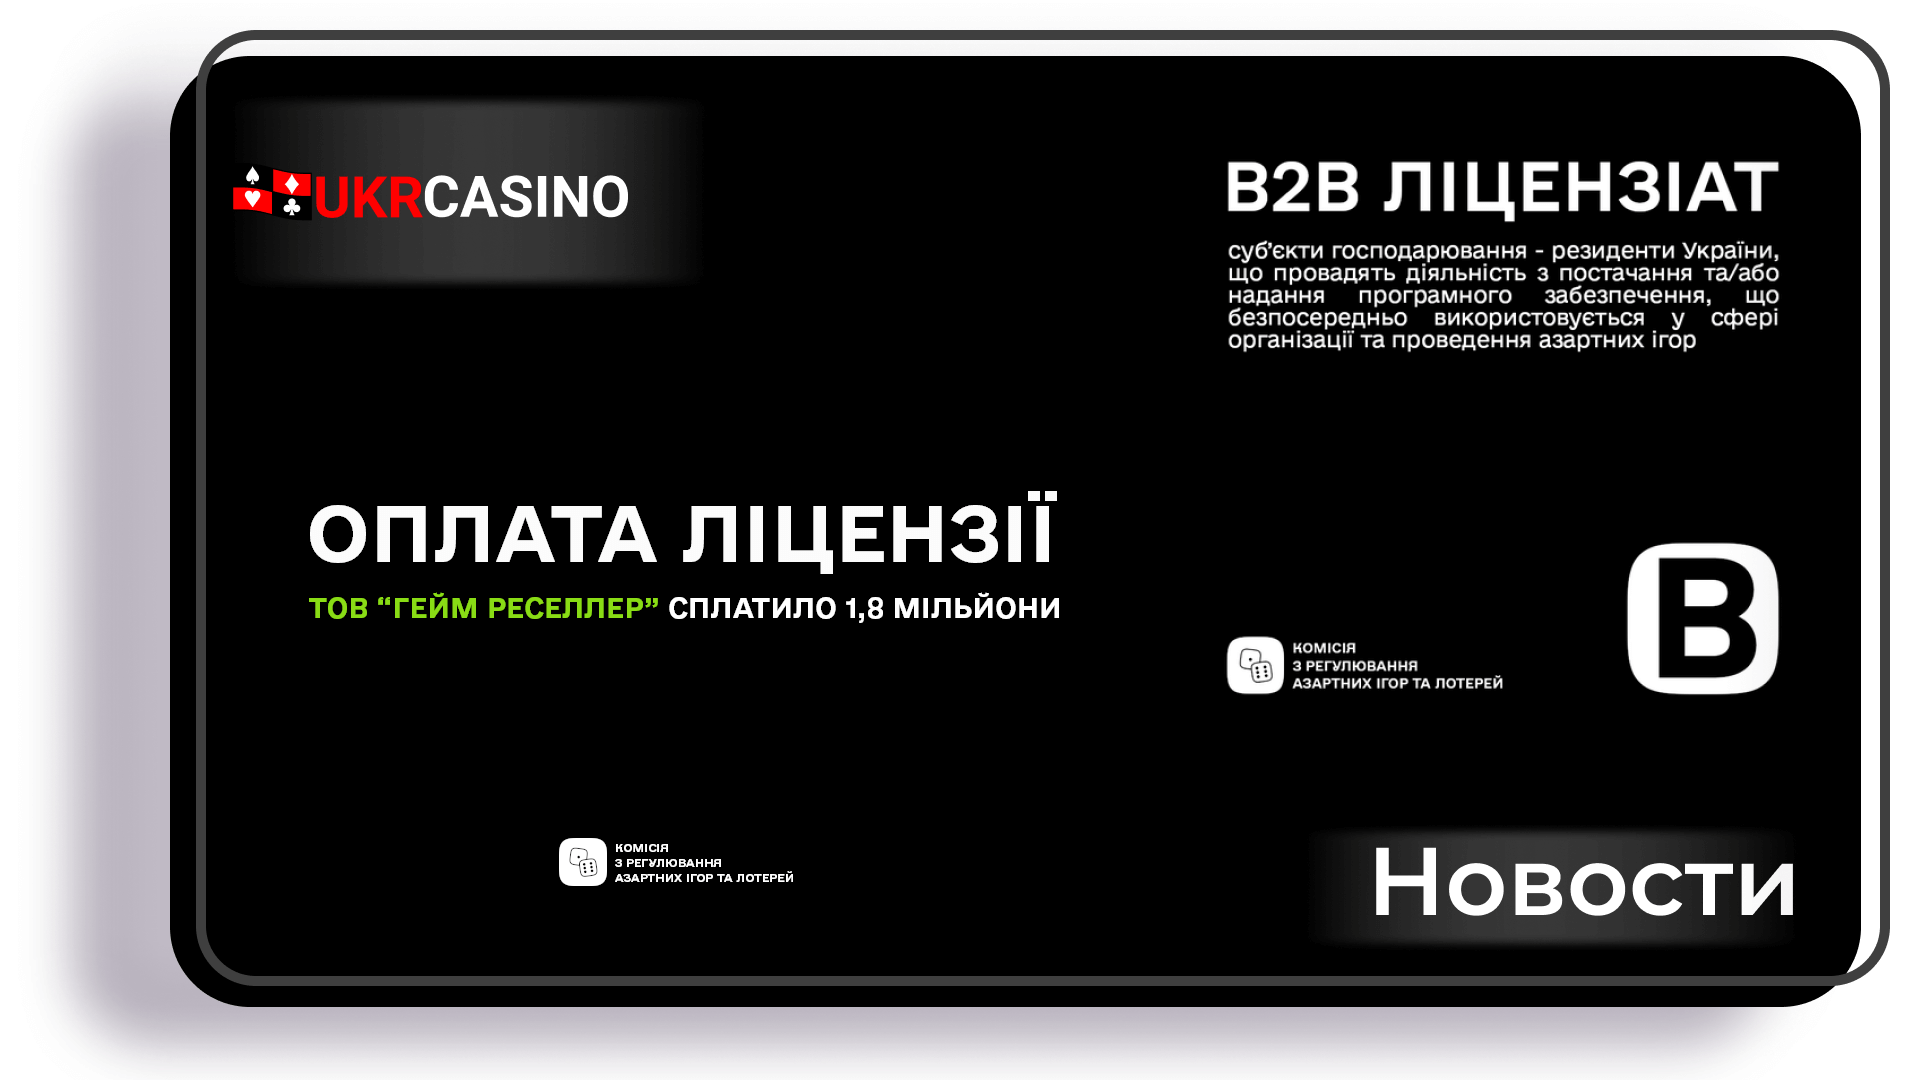 Первая b2b-компания в азартной индустрии заплатила 1,8 миллиона гривен